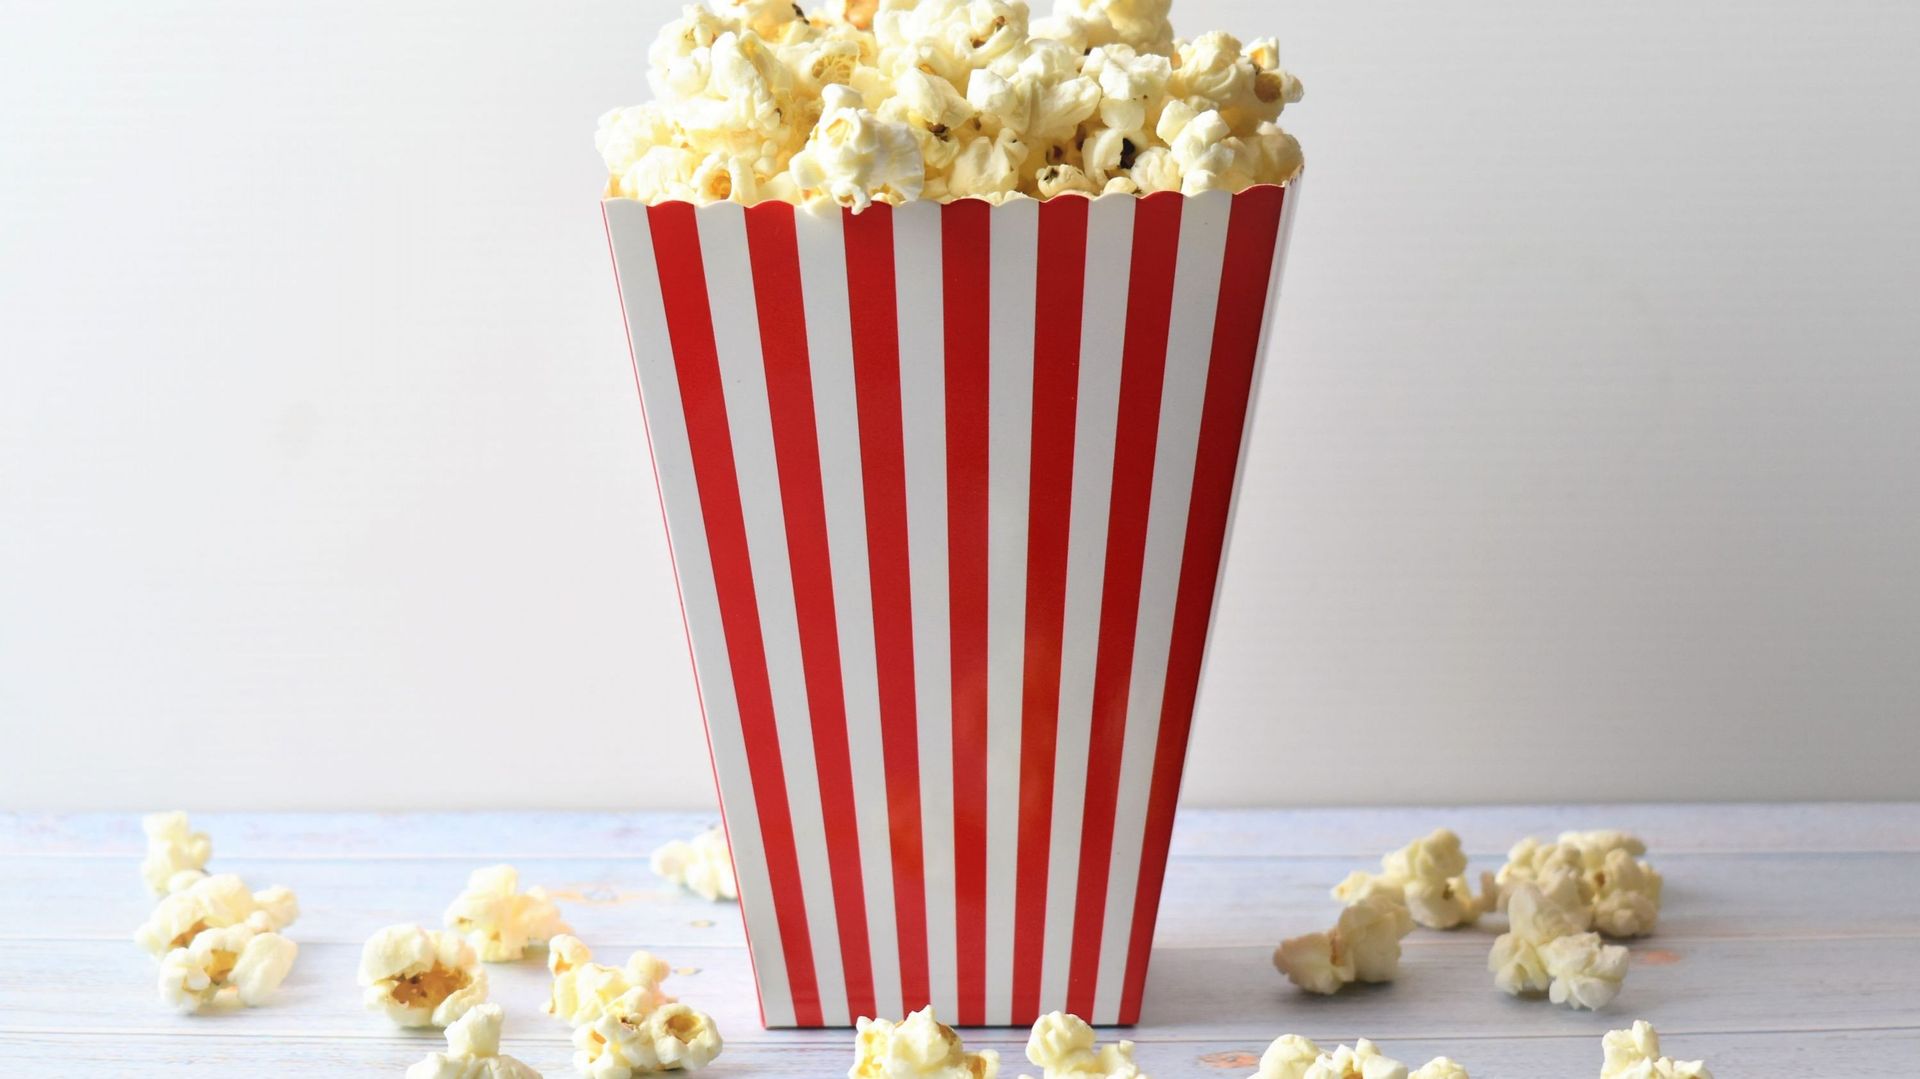 Journée mondiale du popcorn : notre sélection des films, séries, docus à voir absolument